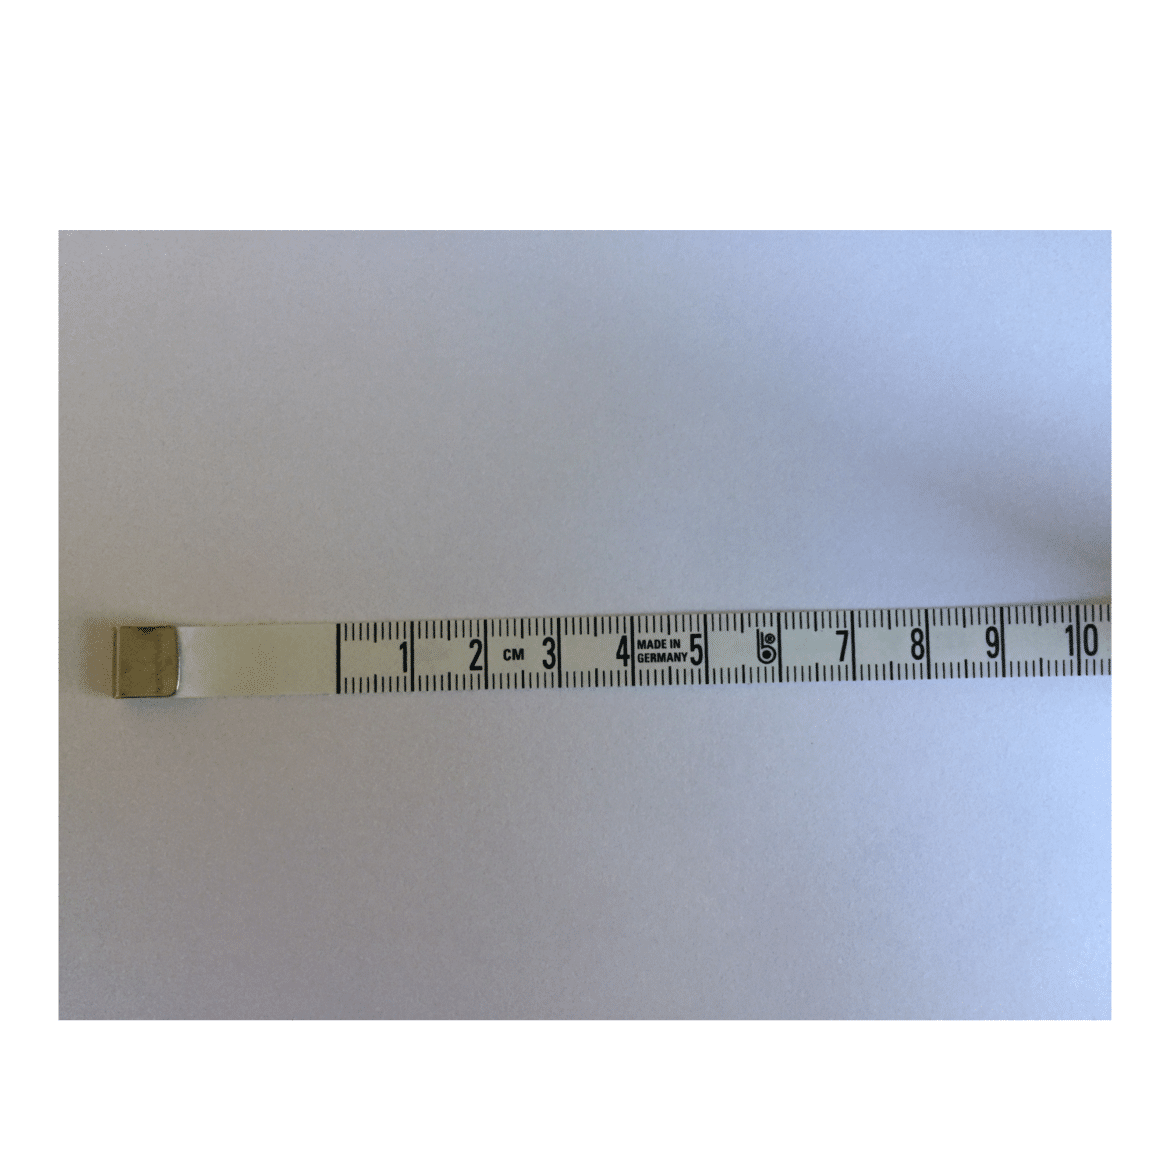 Calibreur multicouche 16-26 mm - Mr.Bricolage